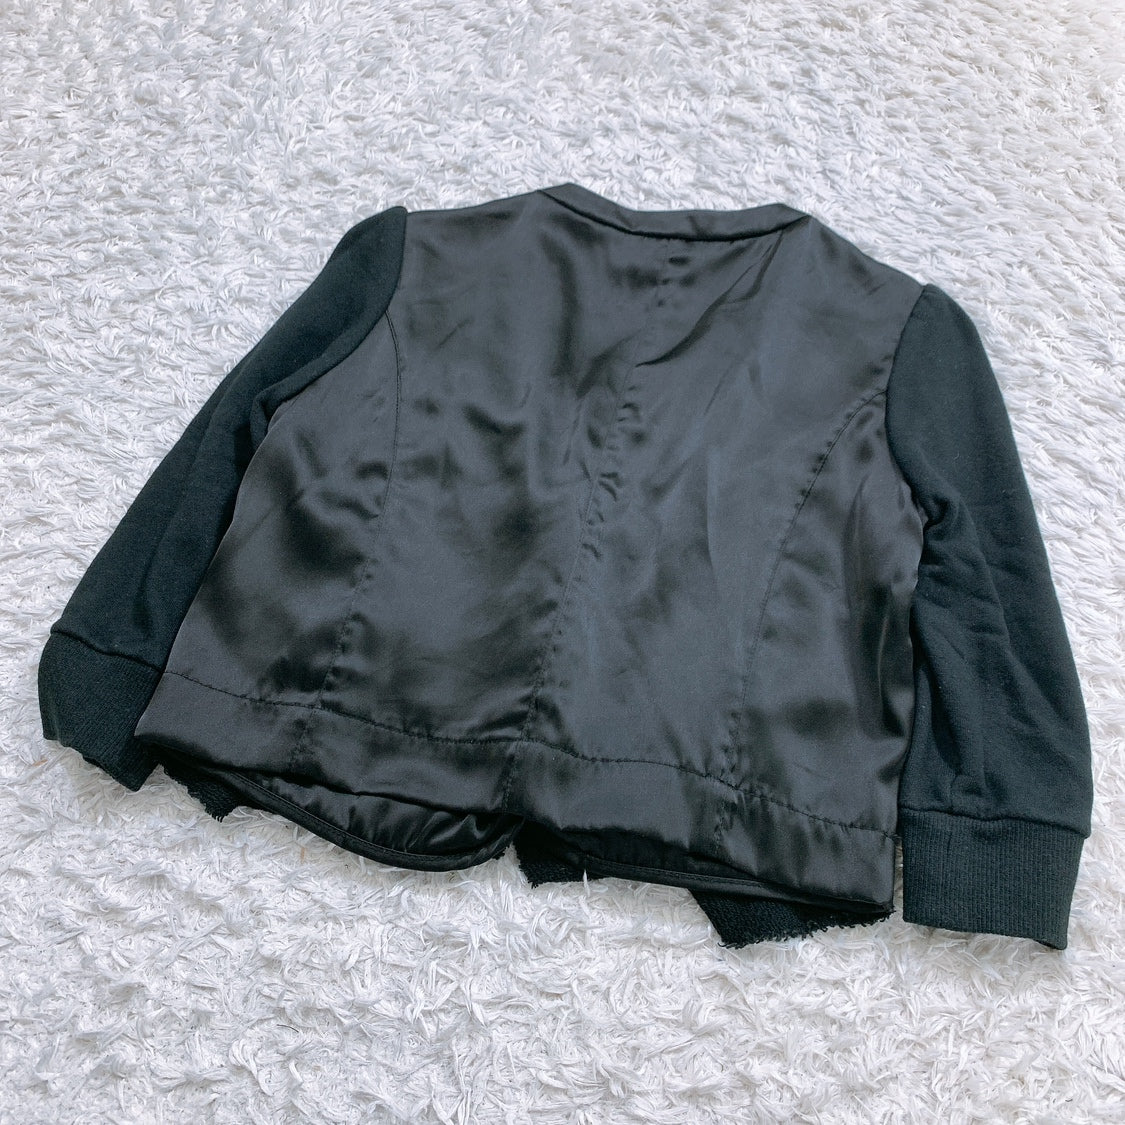 レディース DOUBLE STANDARD CLOTHING ジャケット 黒 ブラック コットン100 オケージョン ダブル スタンダード クロージング 【14203】